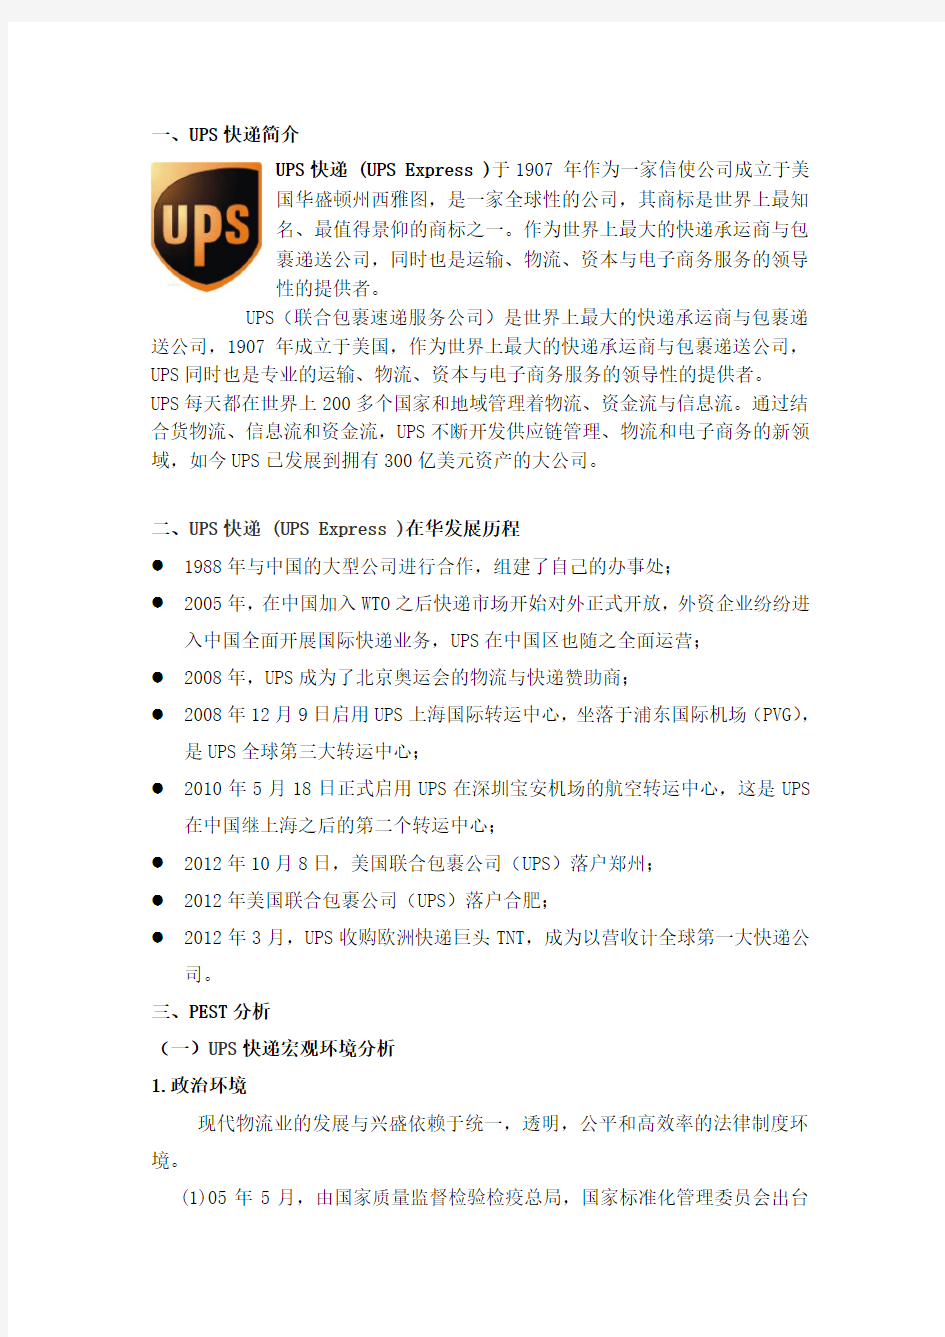 UPS快递公司战略分析